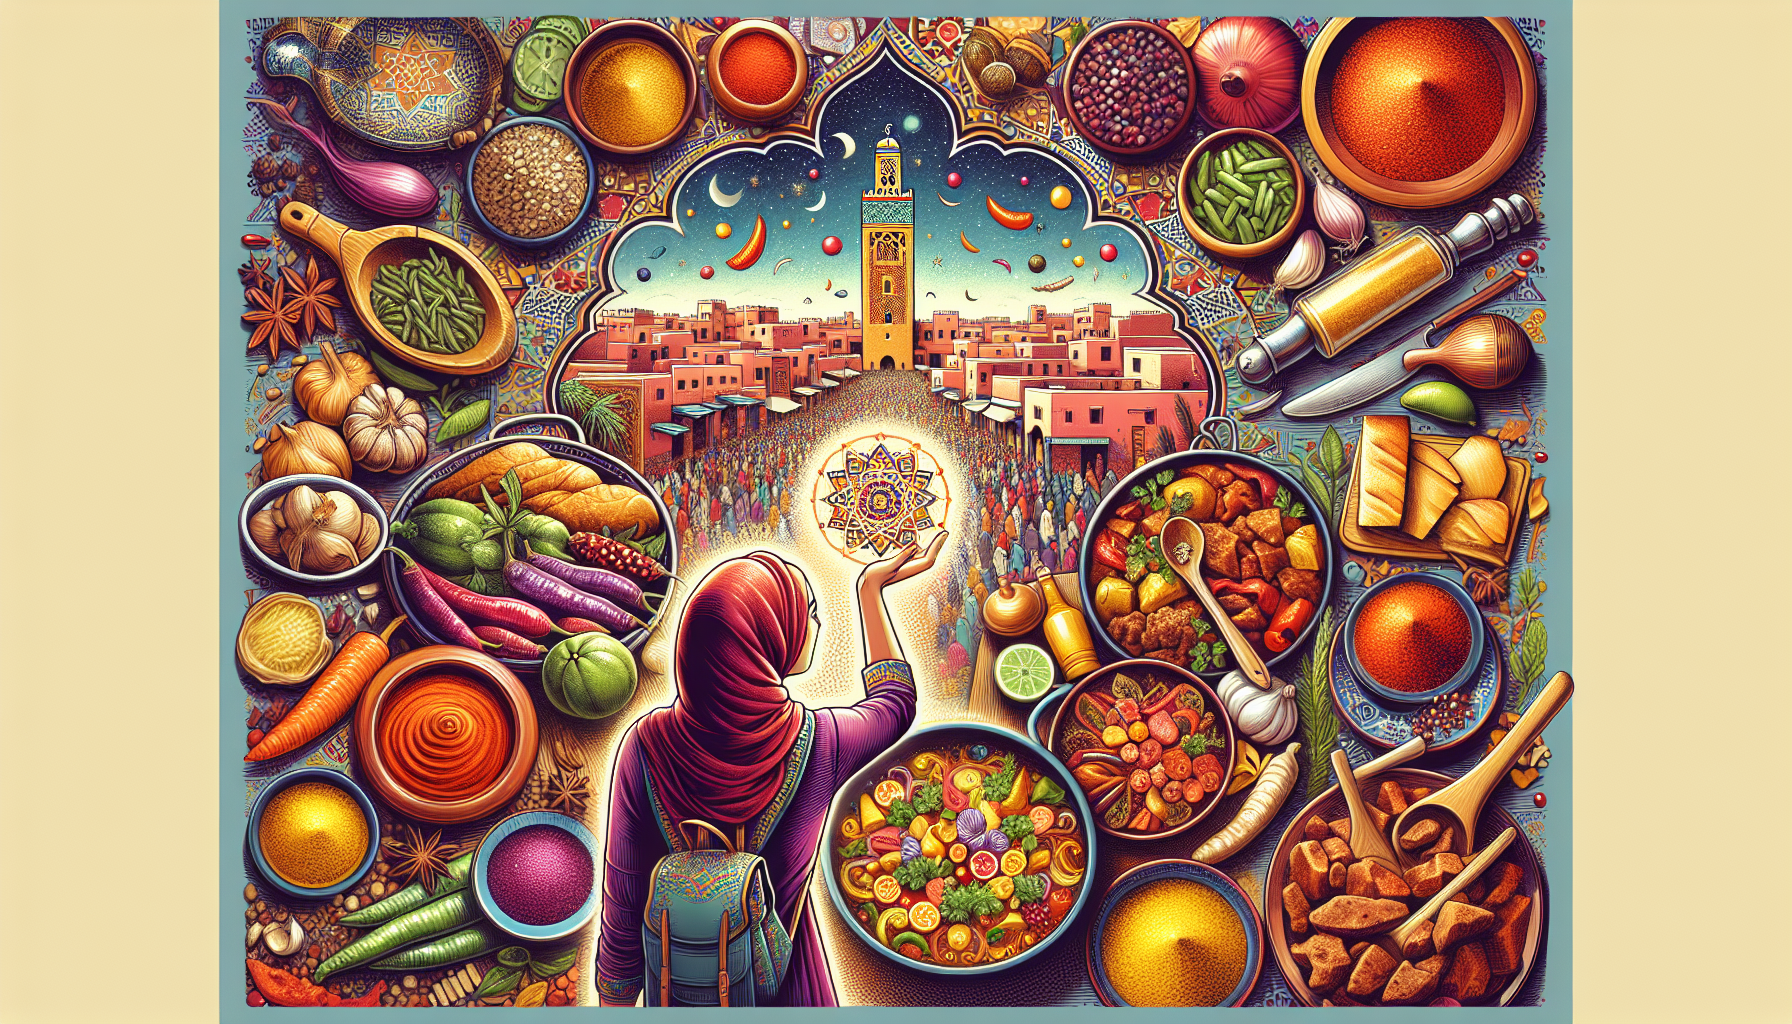 découvrez la riche tradition culinaire de marrakech à travers une exploration de la cuisine marocaine traditionnelle, ses saveurs uniques et ses secrets subtilement dévoilés.